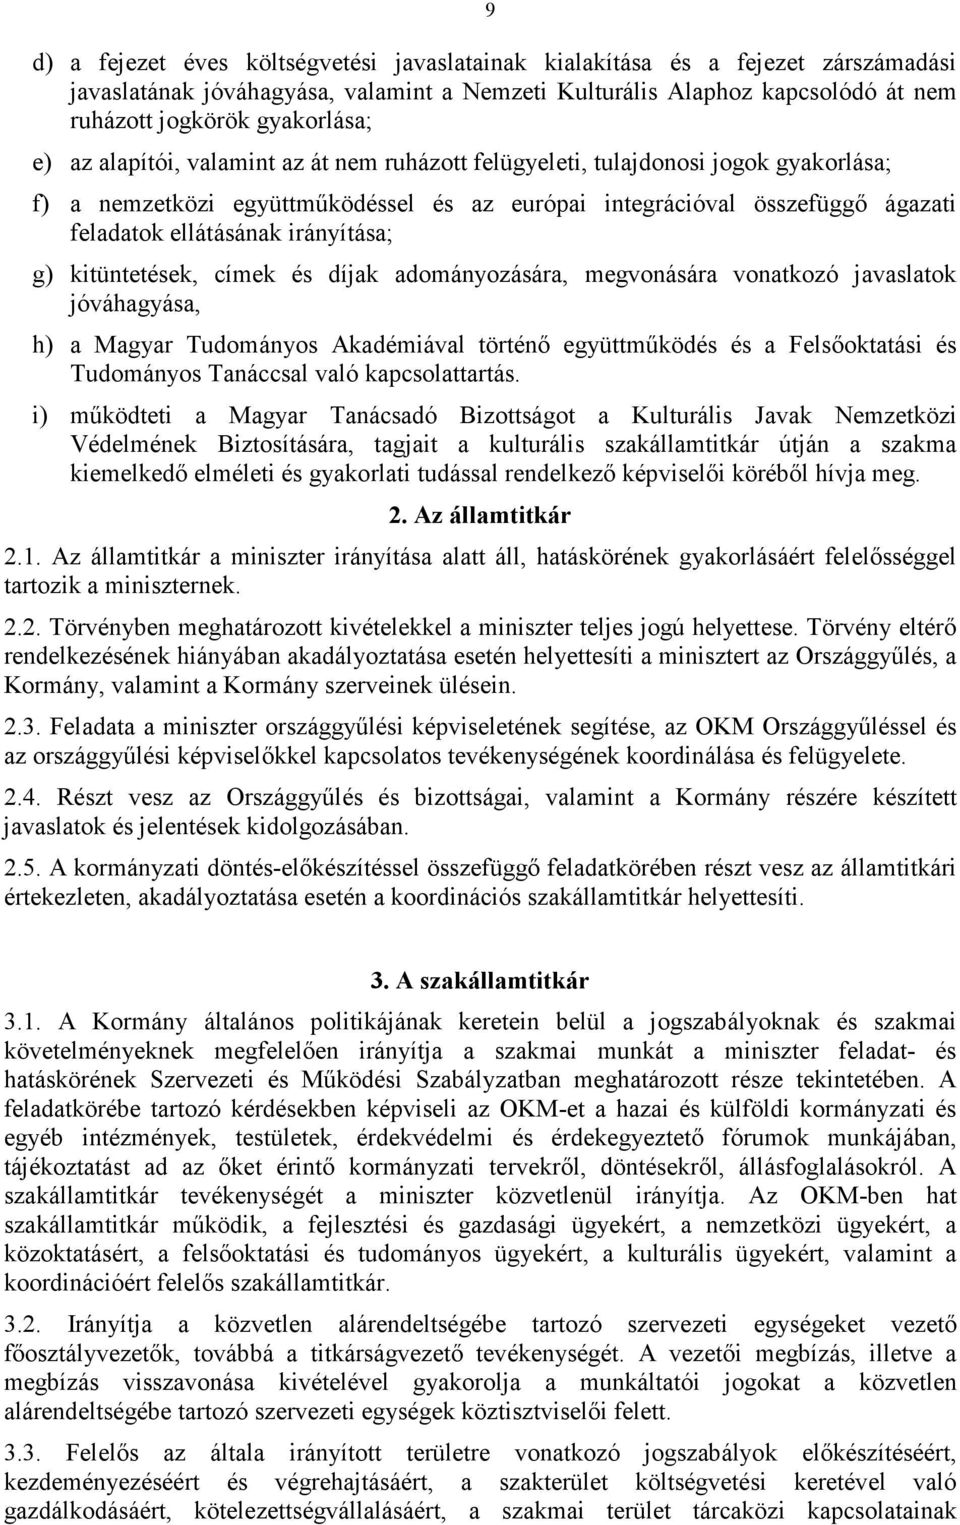 irányítása; g) kitüntetések, címek és díjak adományozására, megvonására vonatkozó javaslatok jóváhagyása, h) a Magyar Tudományos Akadémiával történı együttmőködés és a Felsıoktatási és Tudományos